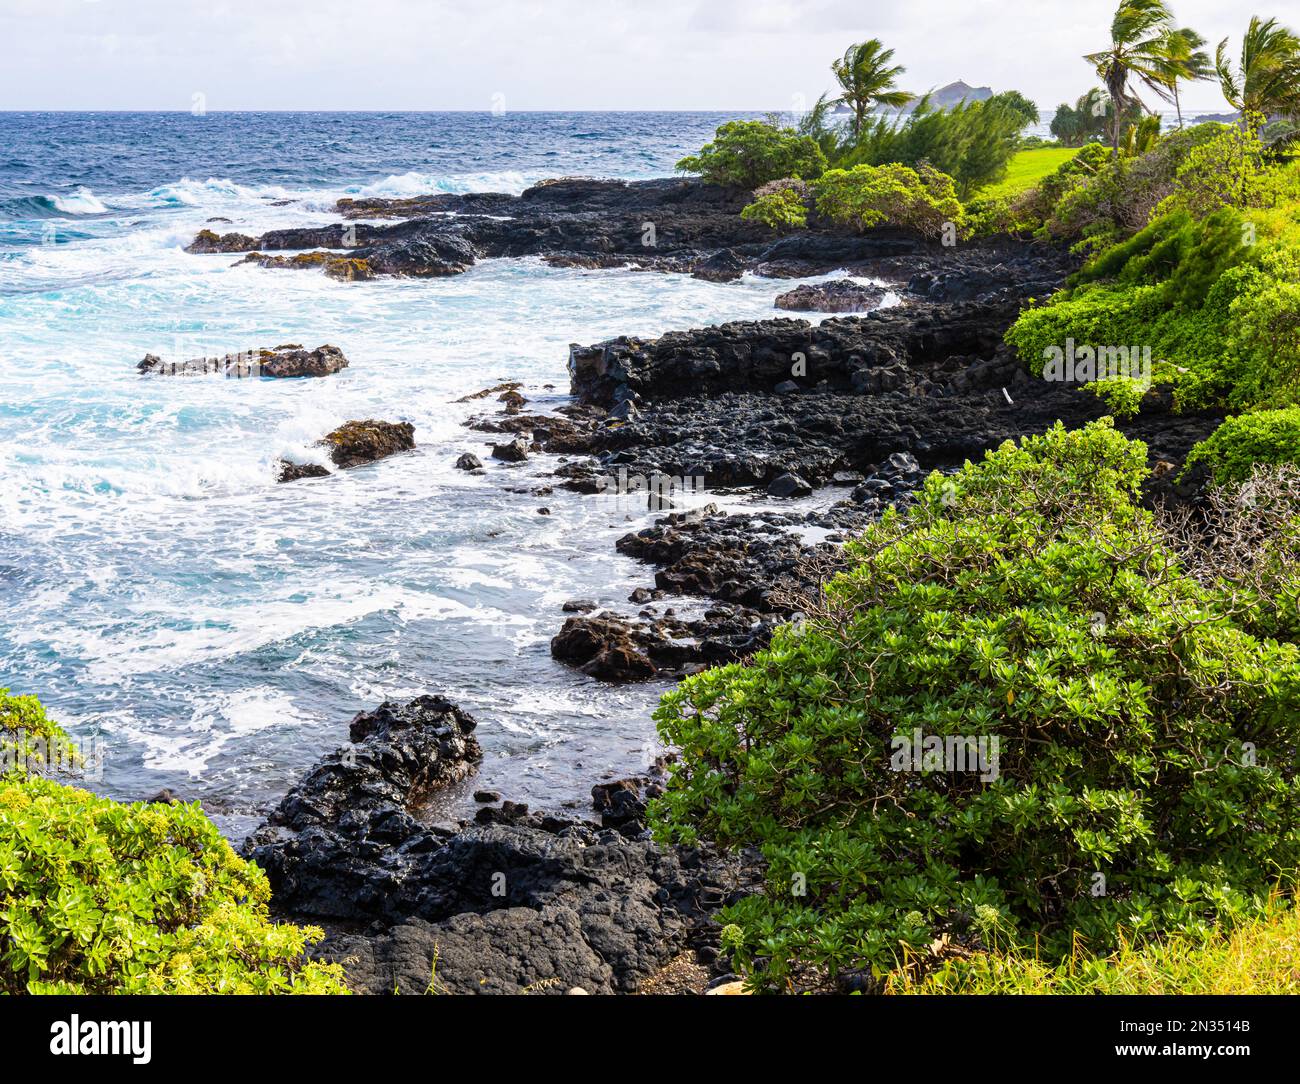 La côte sauvage de la baie de Kaihalulu, Hana, Maui, Hawaii, États-Unis Banque D'Images